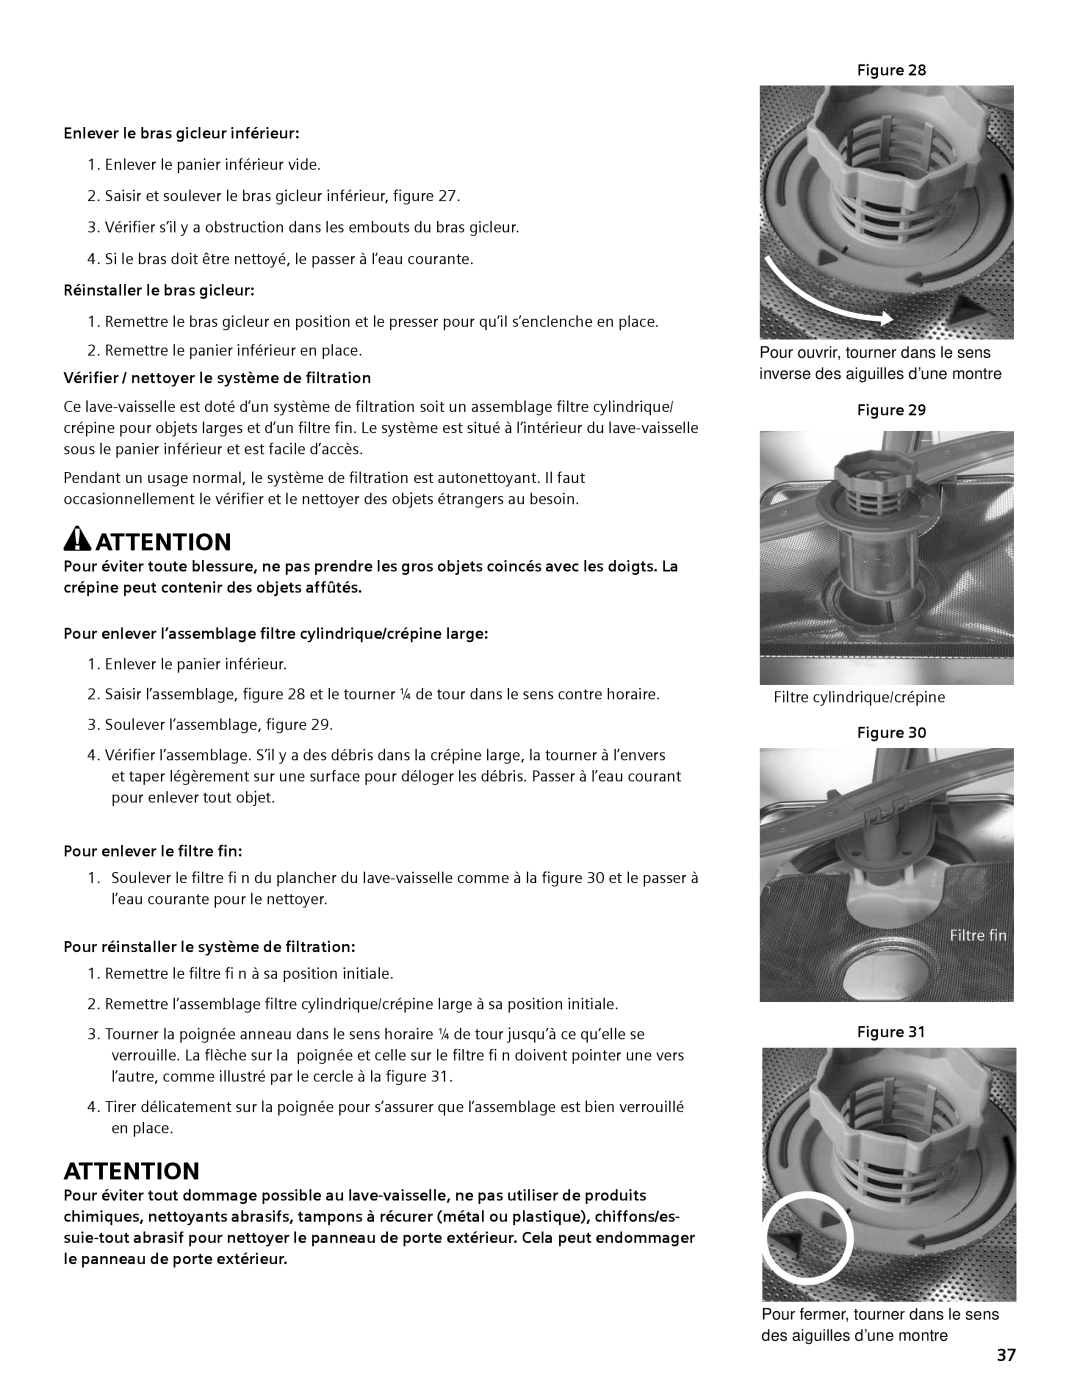 Bosch Appliances SHE44C manual Enlever le bras gicleur inférieur, Filtre fin 